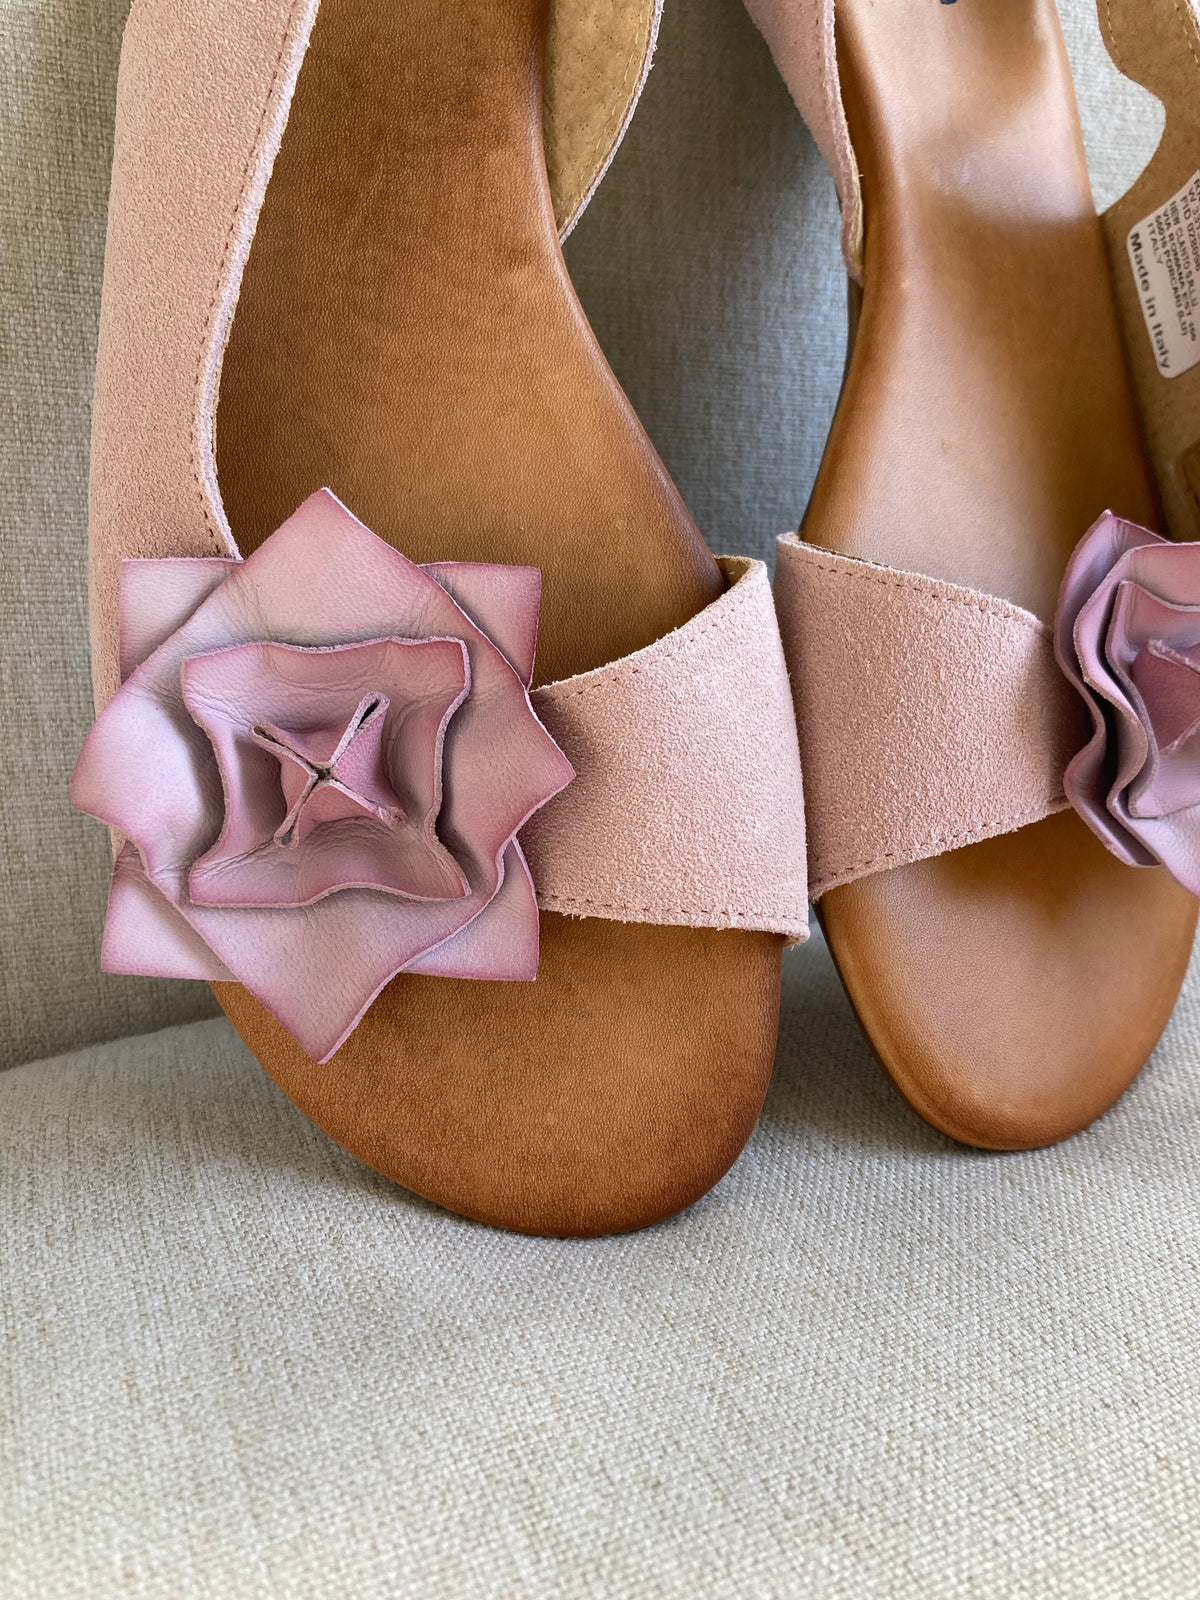 Flower sling back sandals by HEINE - Size 8